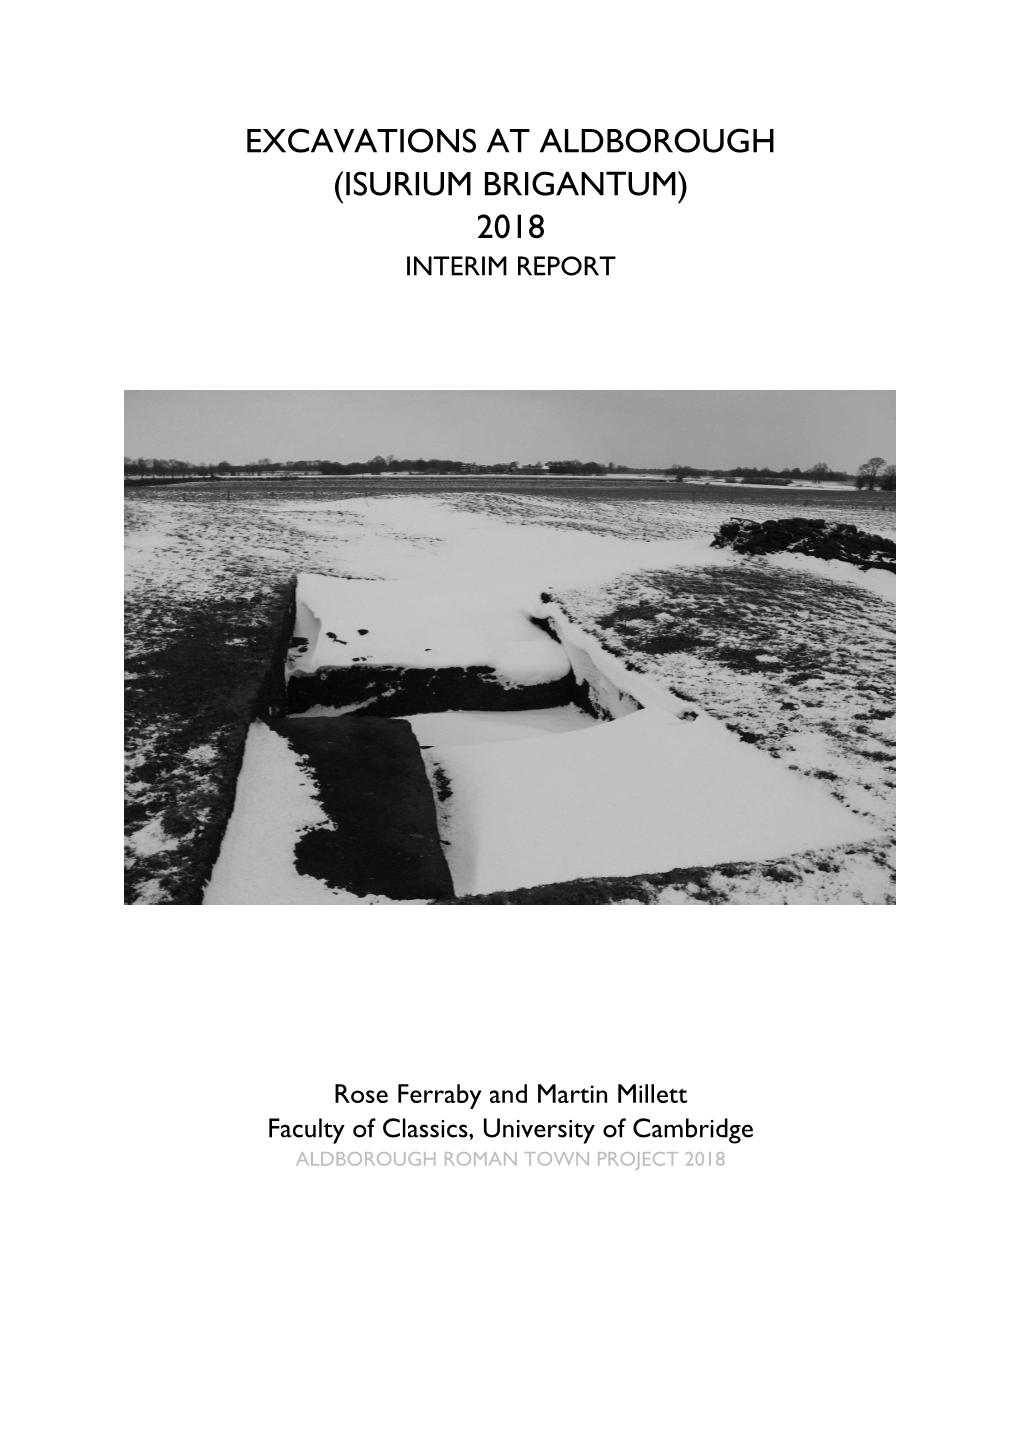 Excavations at Aldborough (Isurium Brigantum) 2018 Interim Report